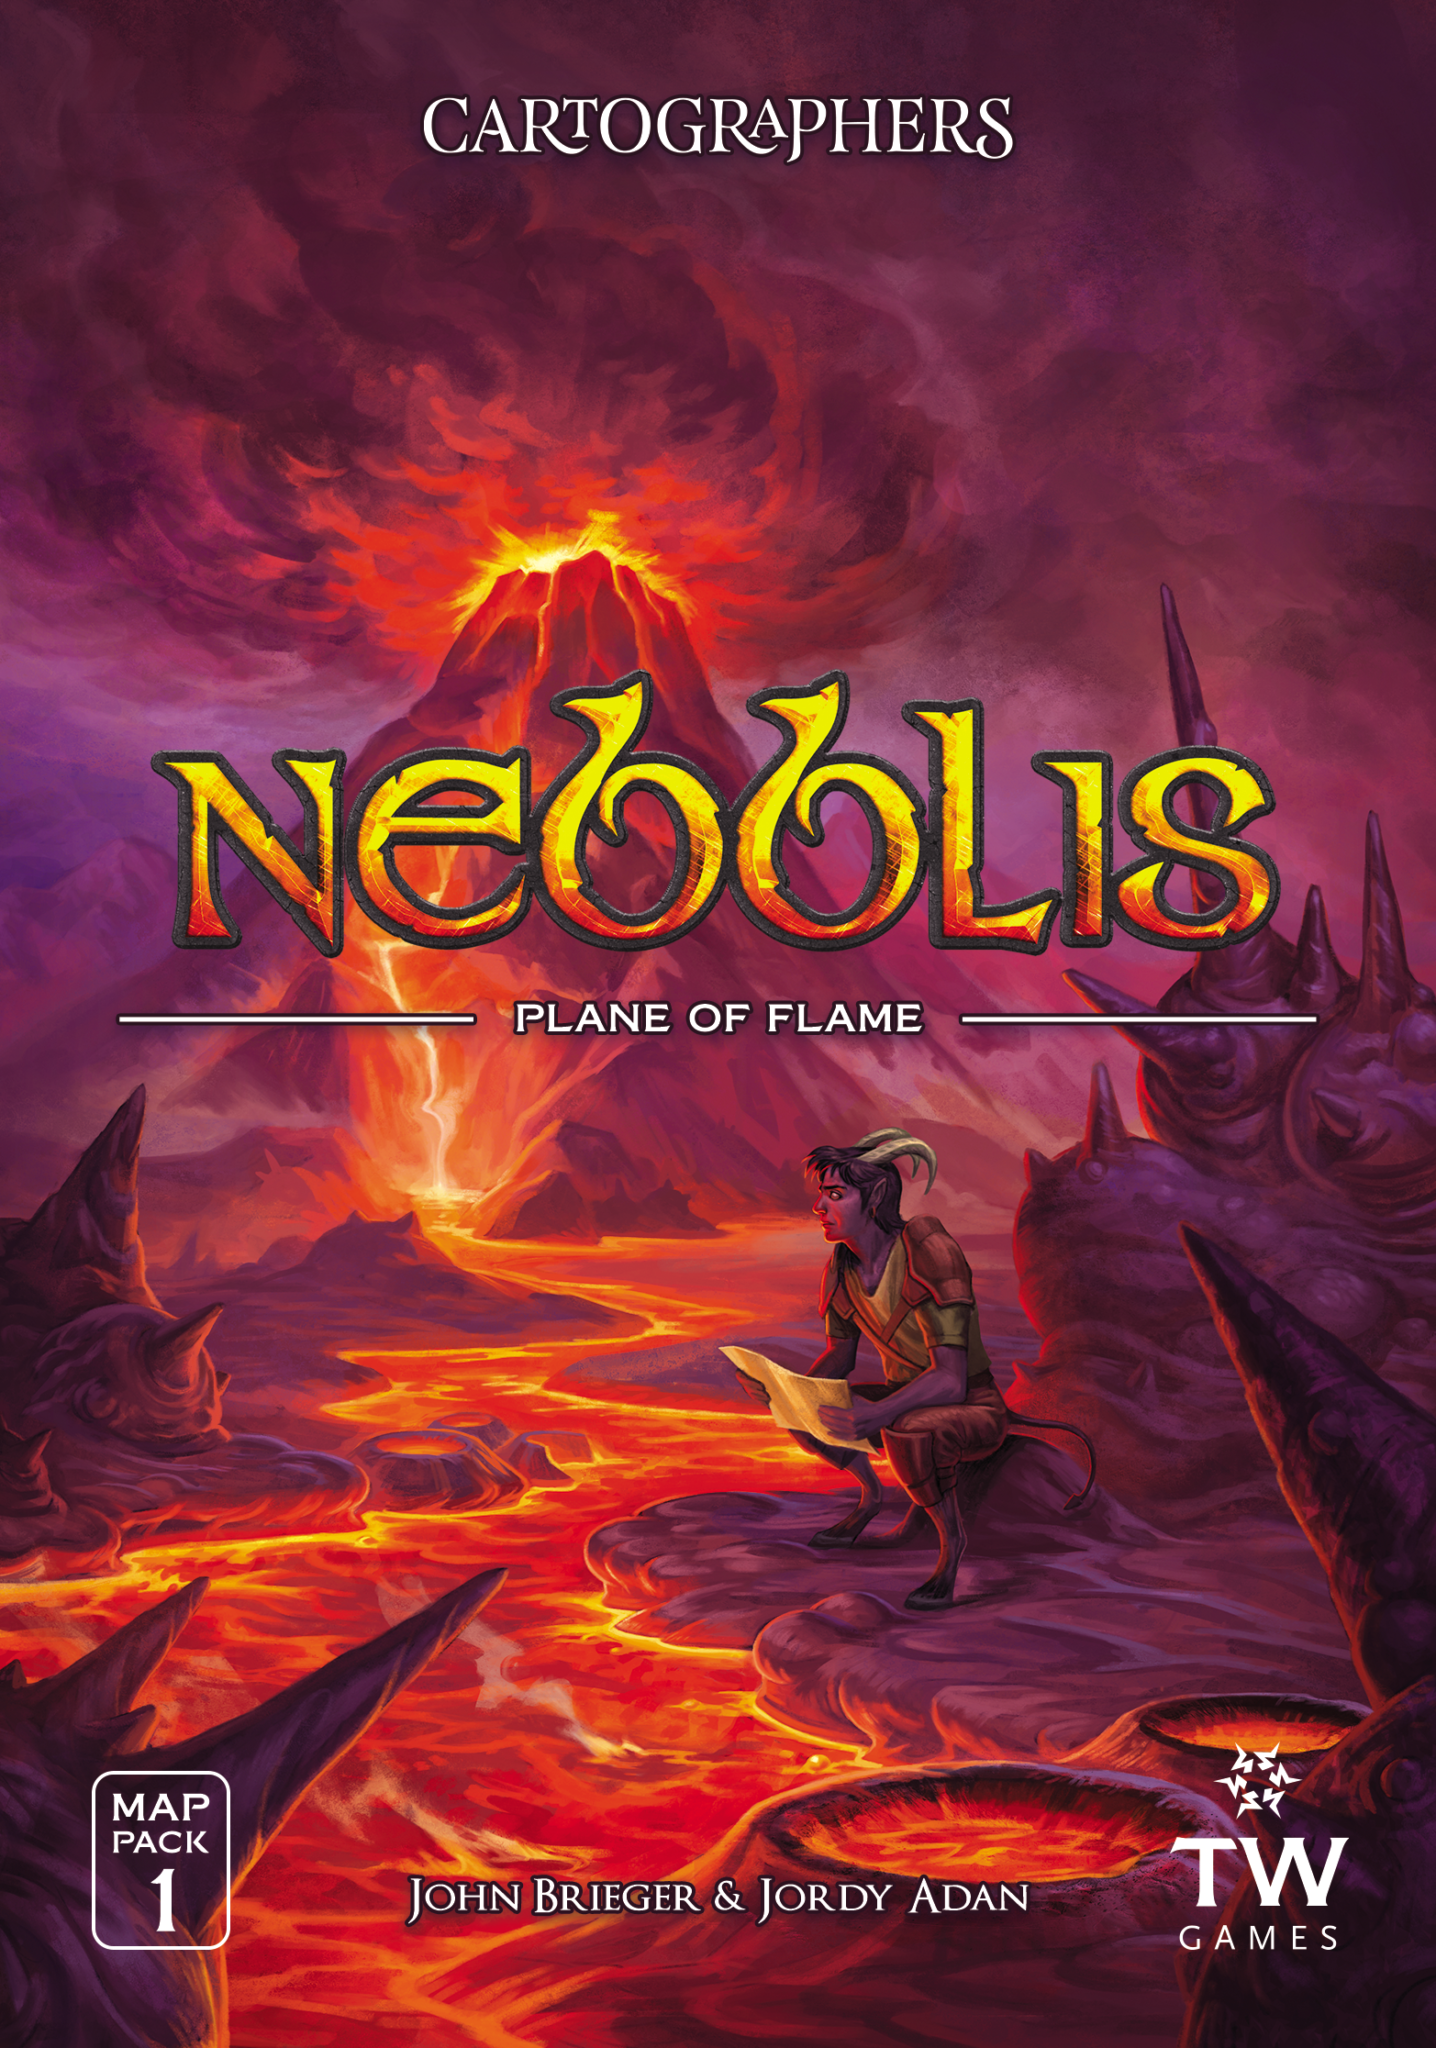 Nebblis map pack cover art